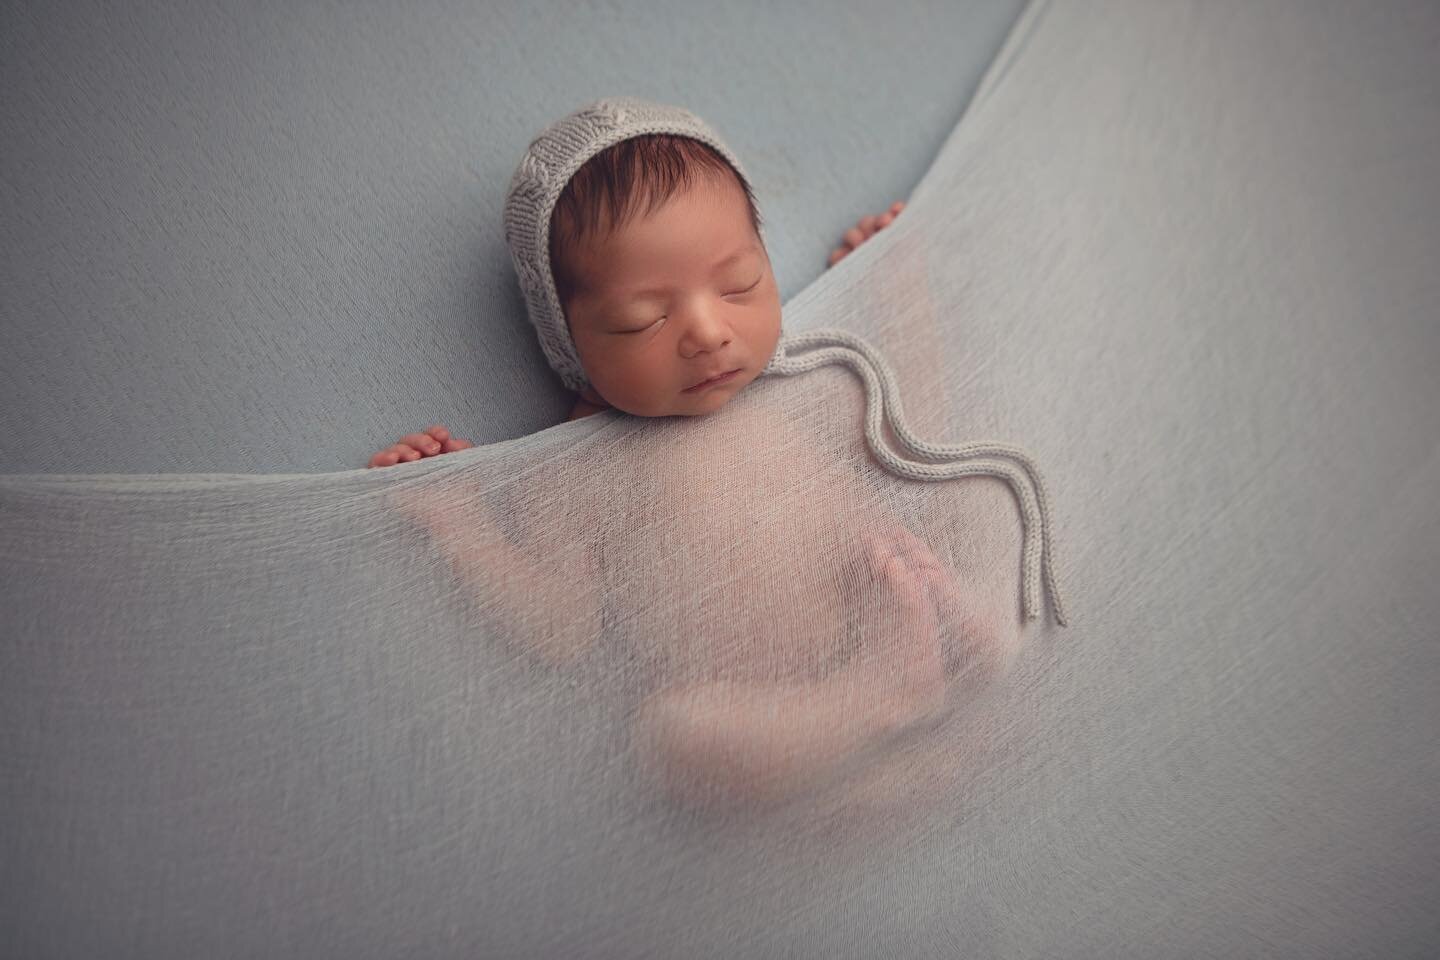 Sneak peak of baby Faisal. Bonnet by @littleblessingphotoprops wrap by @redowlphotoprops